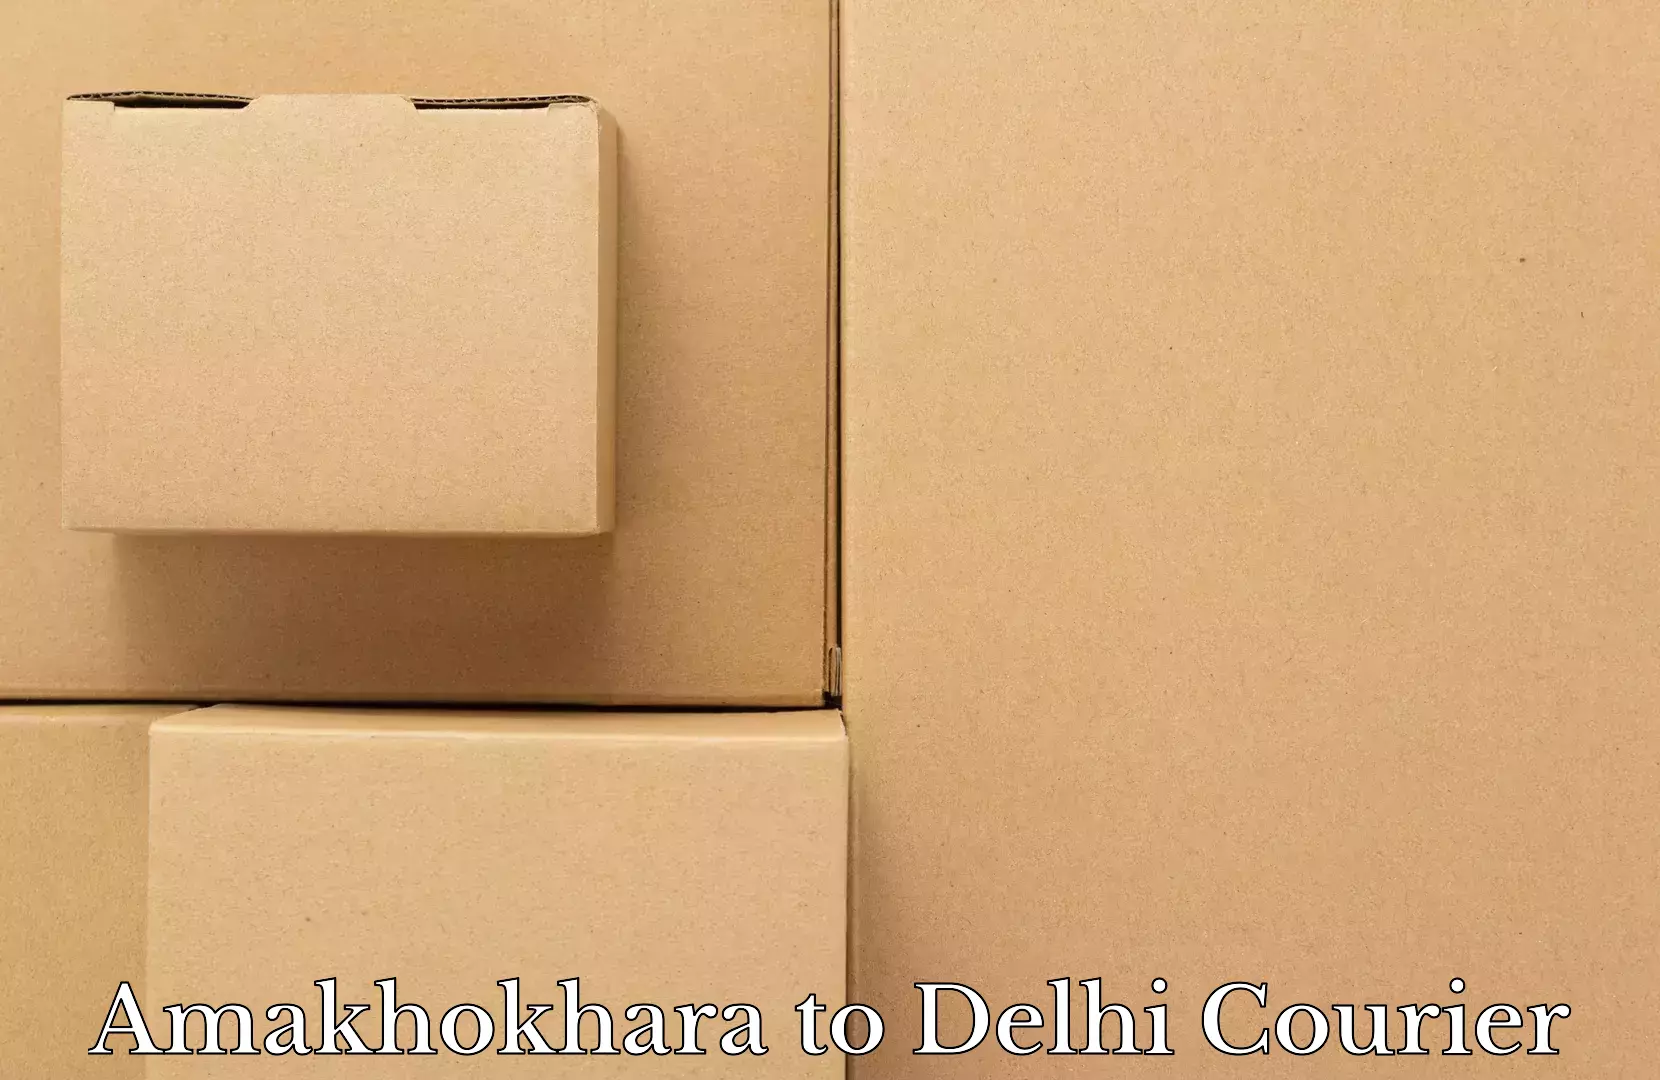 Luggage dispatch service Amakhokhara to University of Delhi